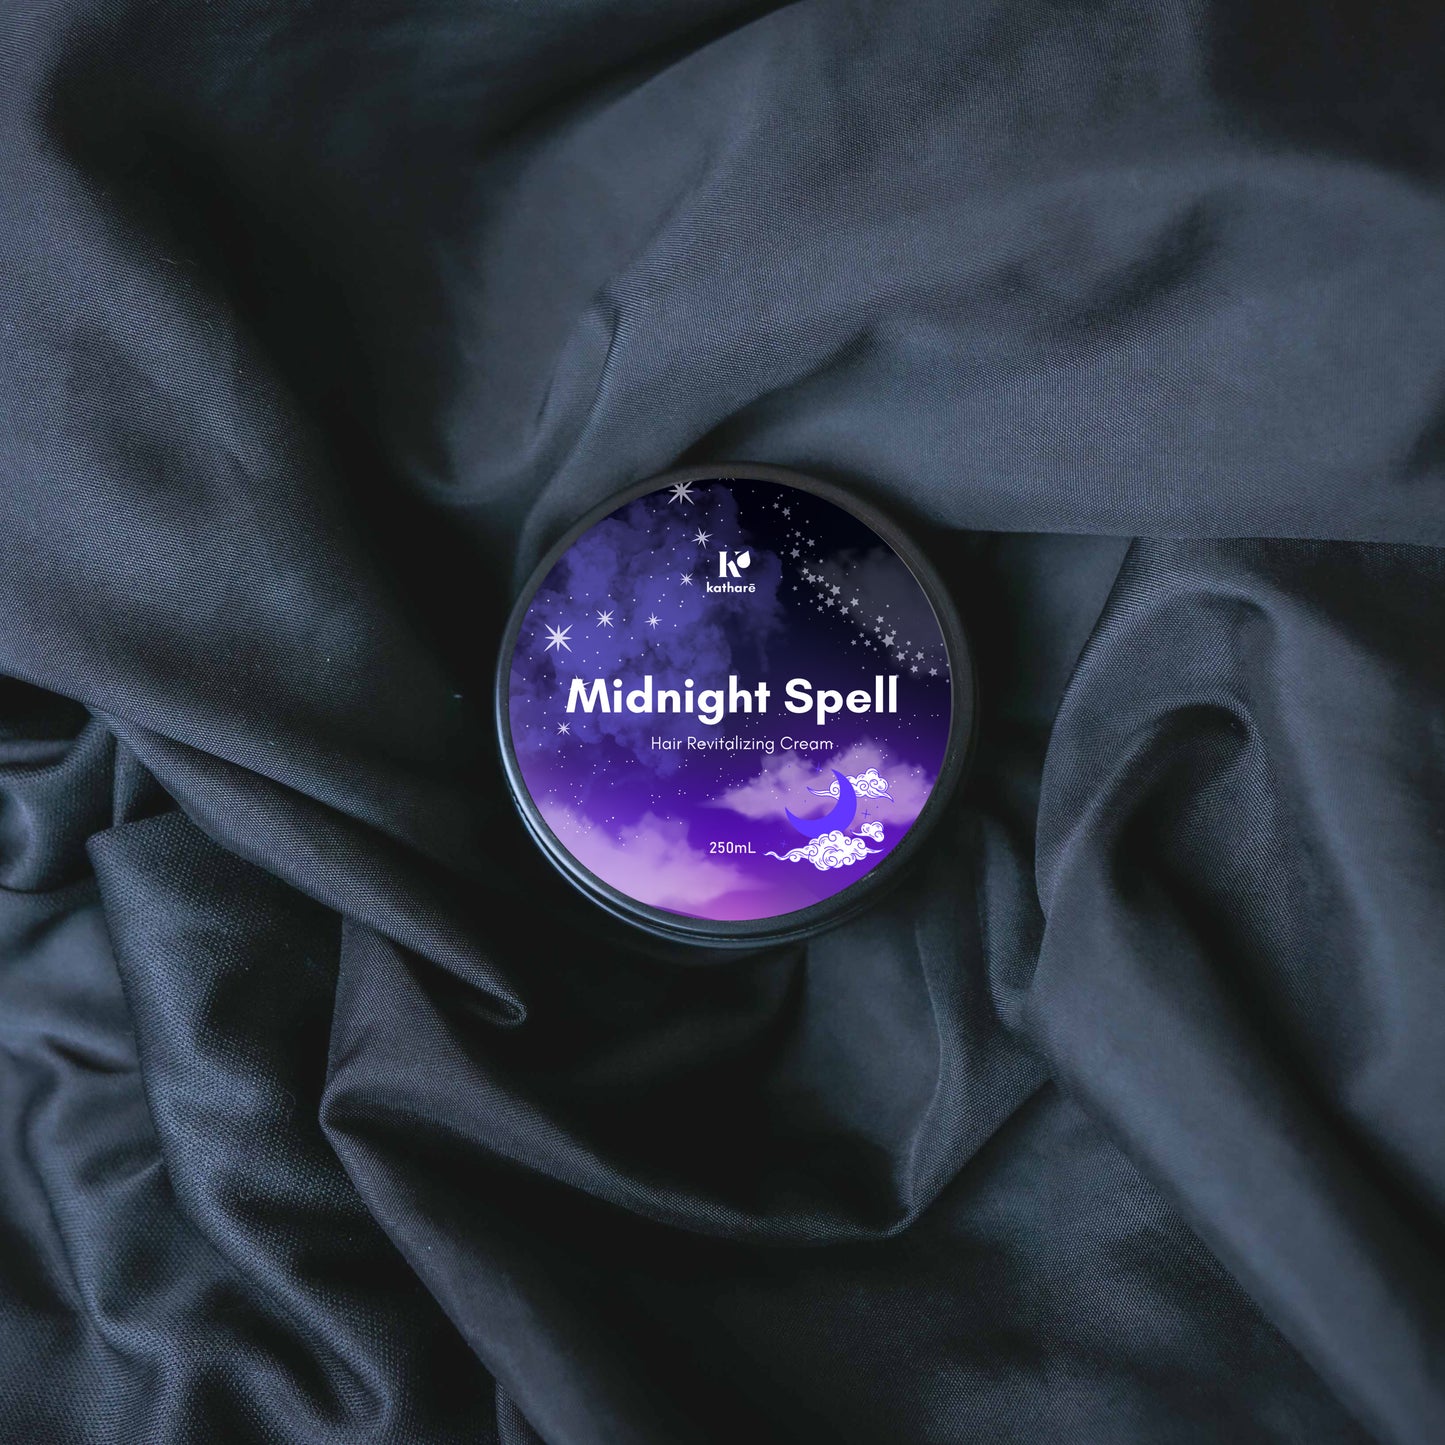 Midnight Spell Revitalizing Deep Conditioner